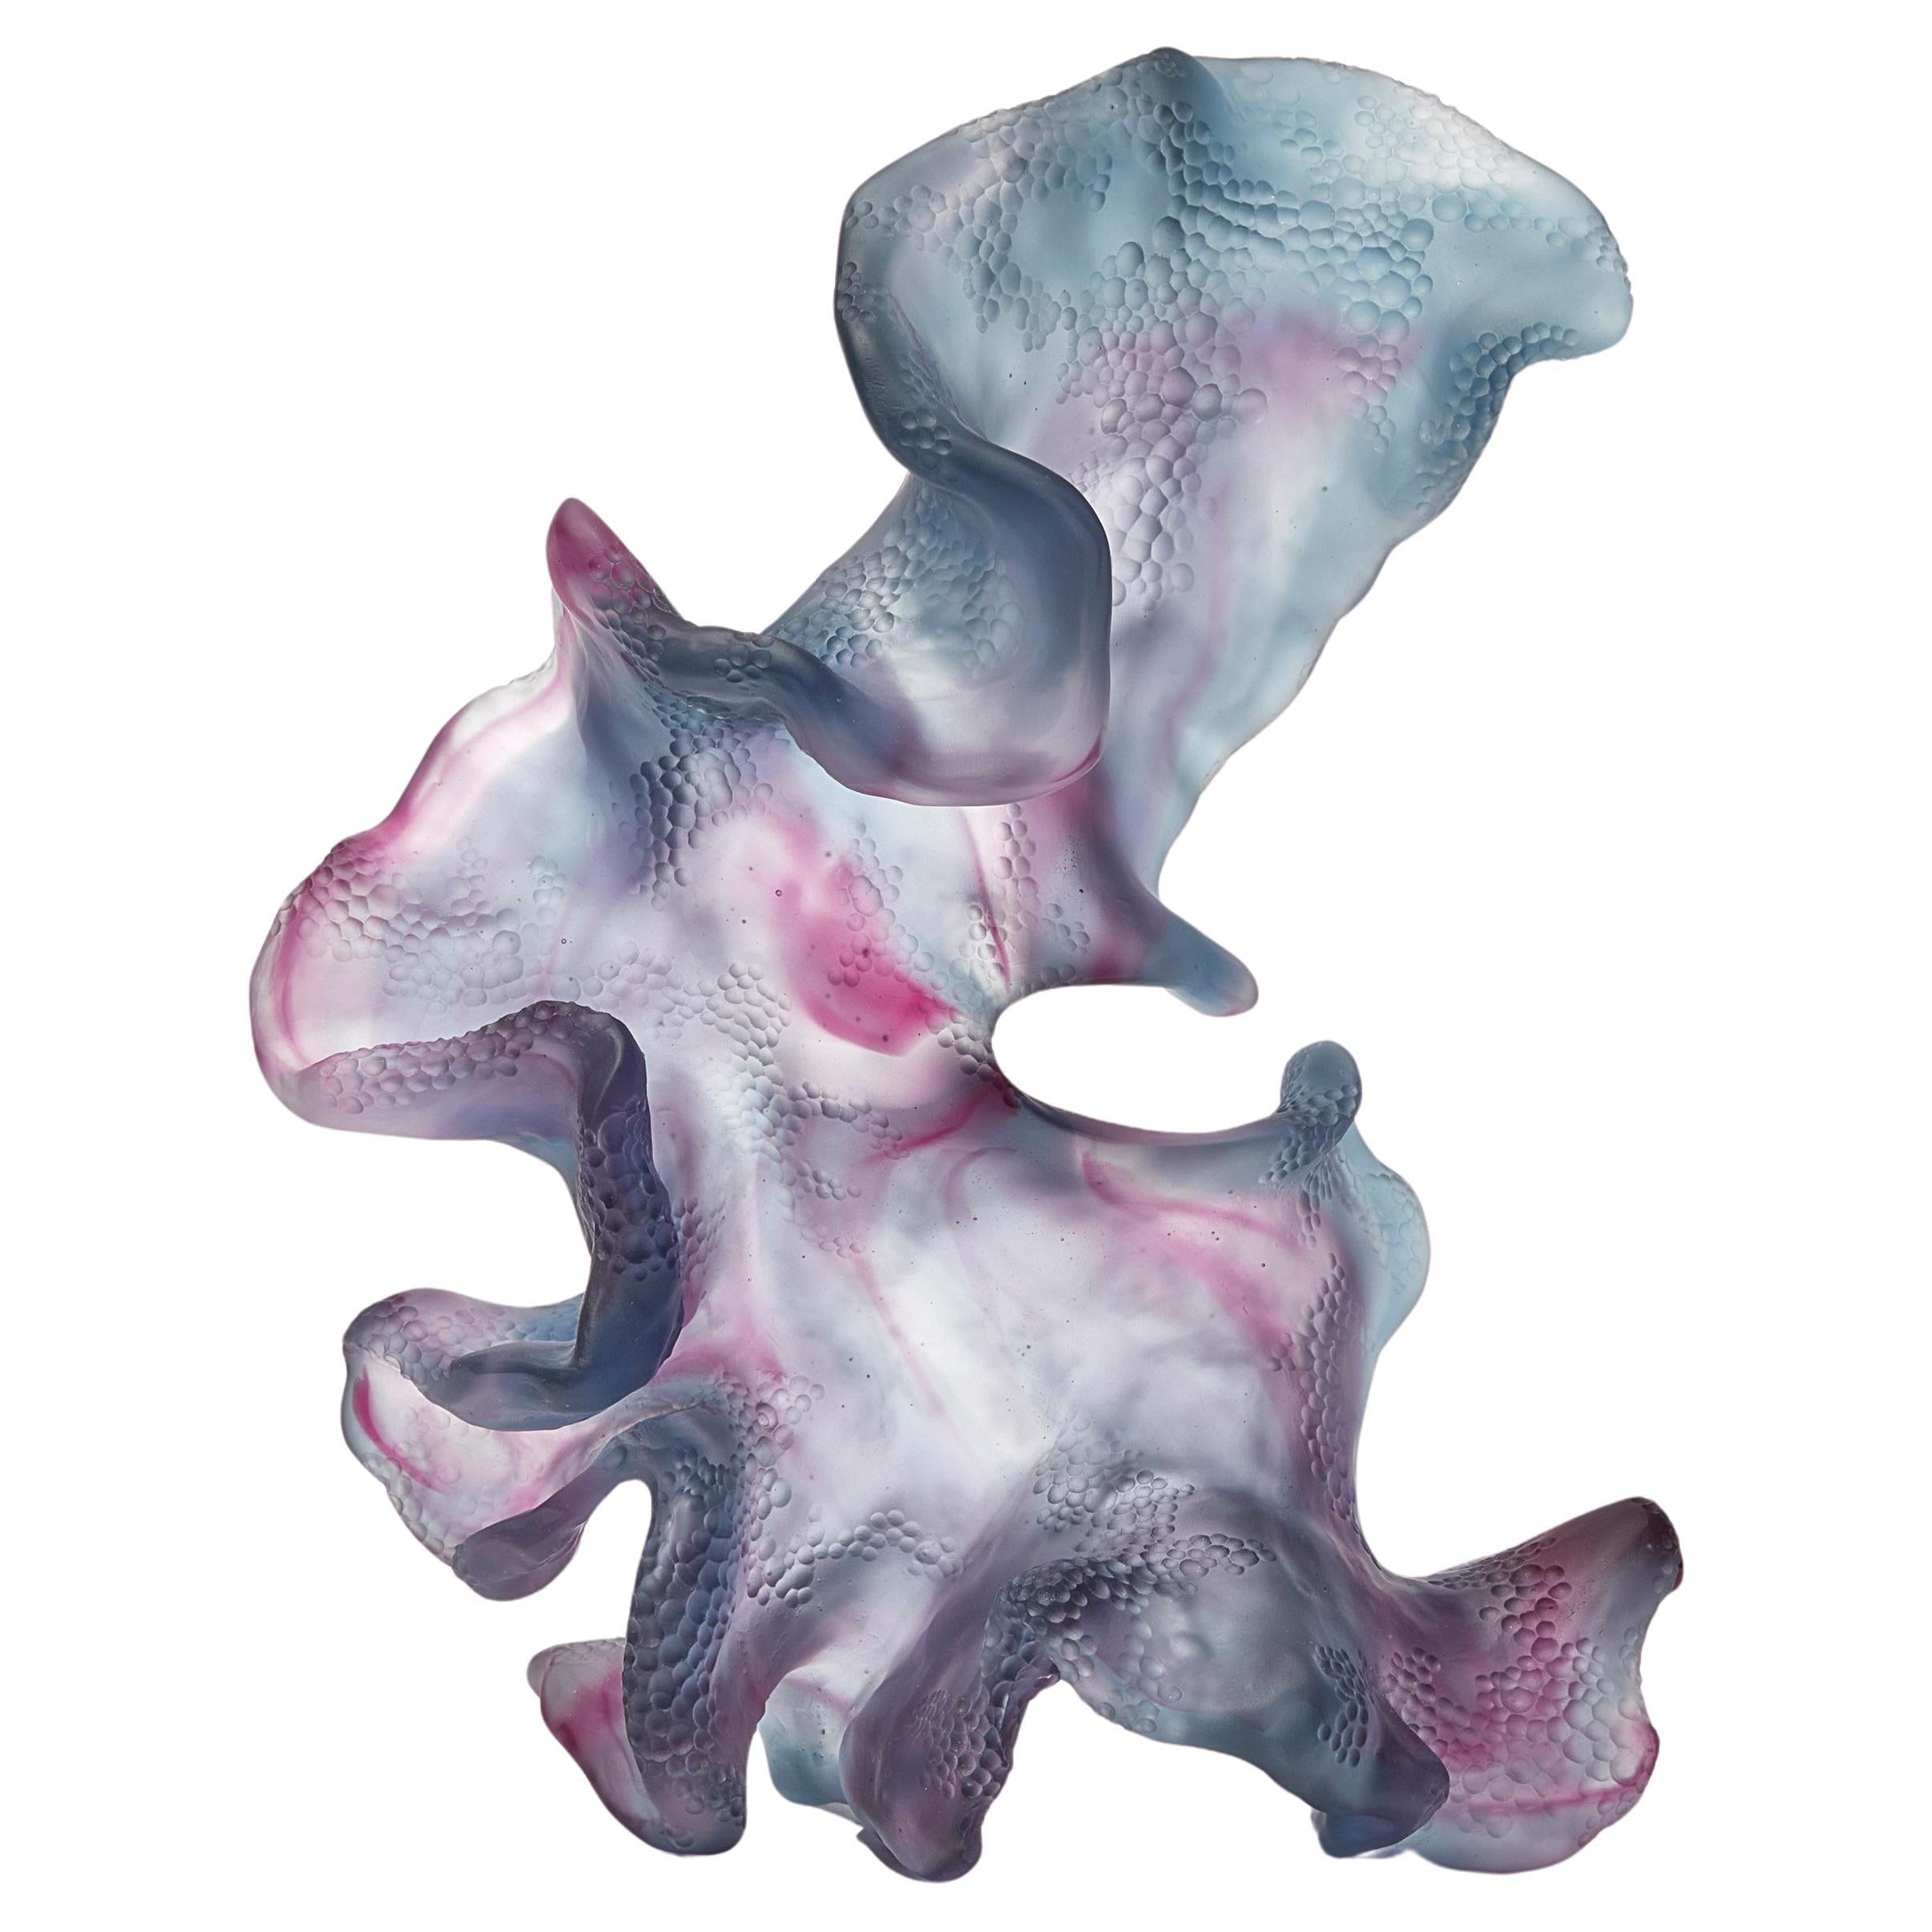 Rippling Transformation, Stahlblaues und rosafarbenes Gussglaskunstwerk von Monette Larsen